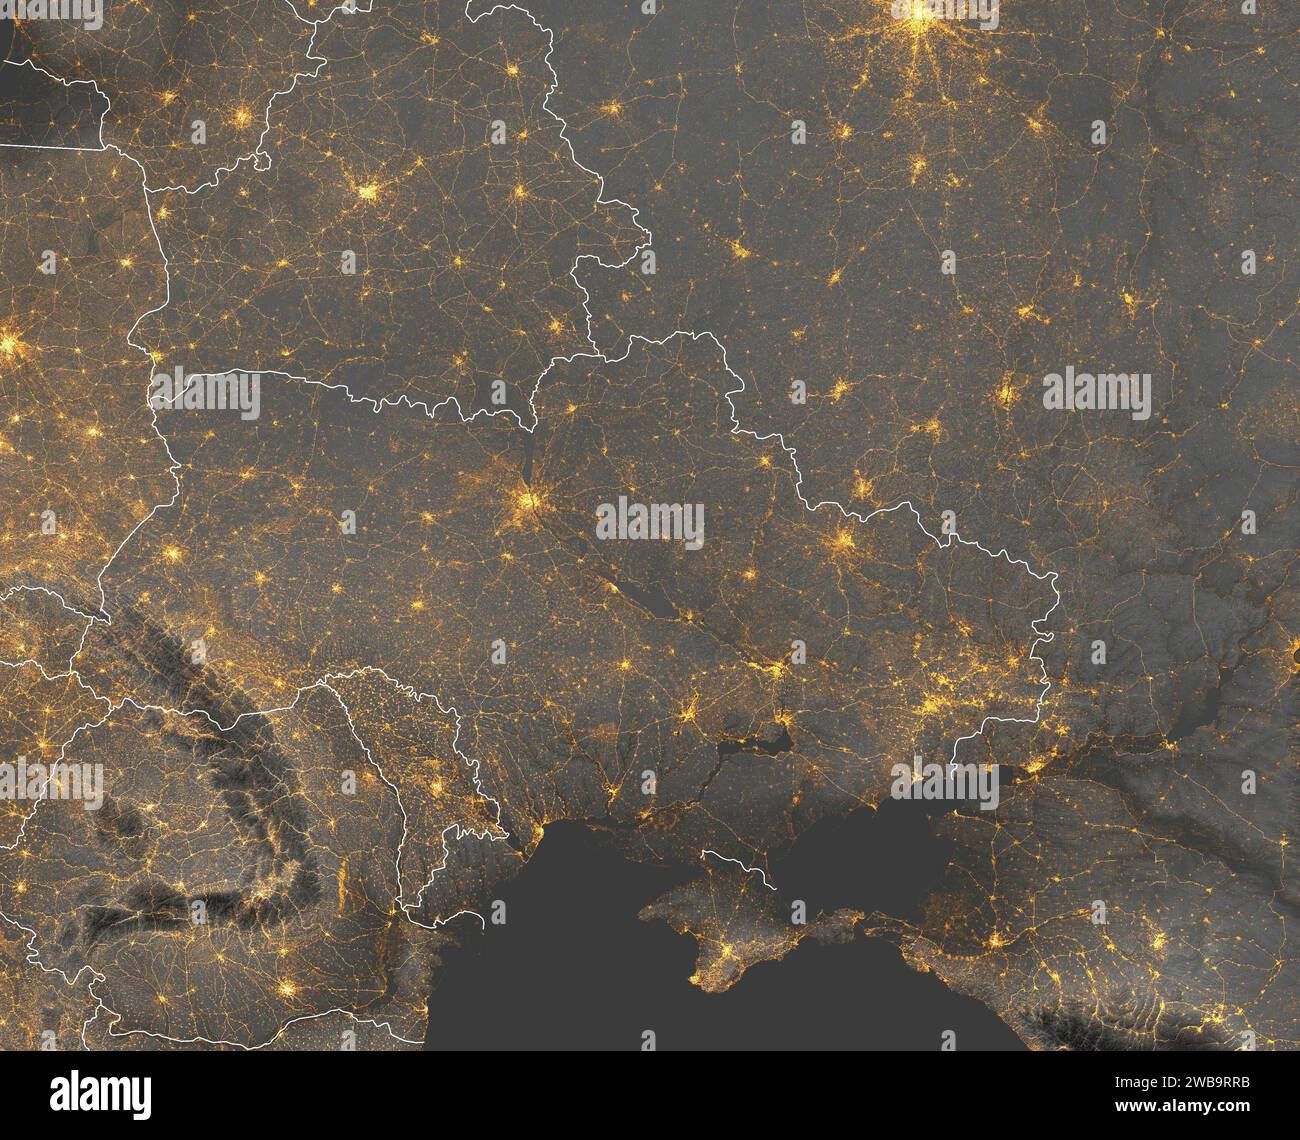 Satellitenansicht der Ukraine, des Schwarzen Meeres und der Grenzen. Stadt- und Straßenlaternen. Elemente dieses Bildes werden von der NASA bereitgestellt Stockfoto